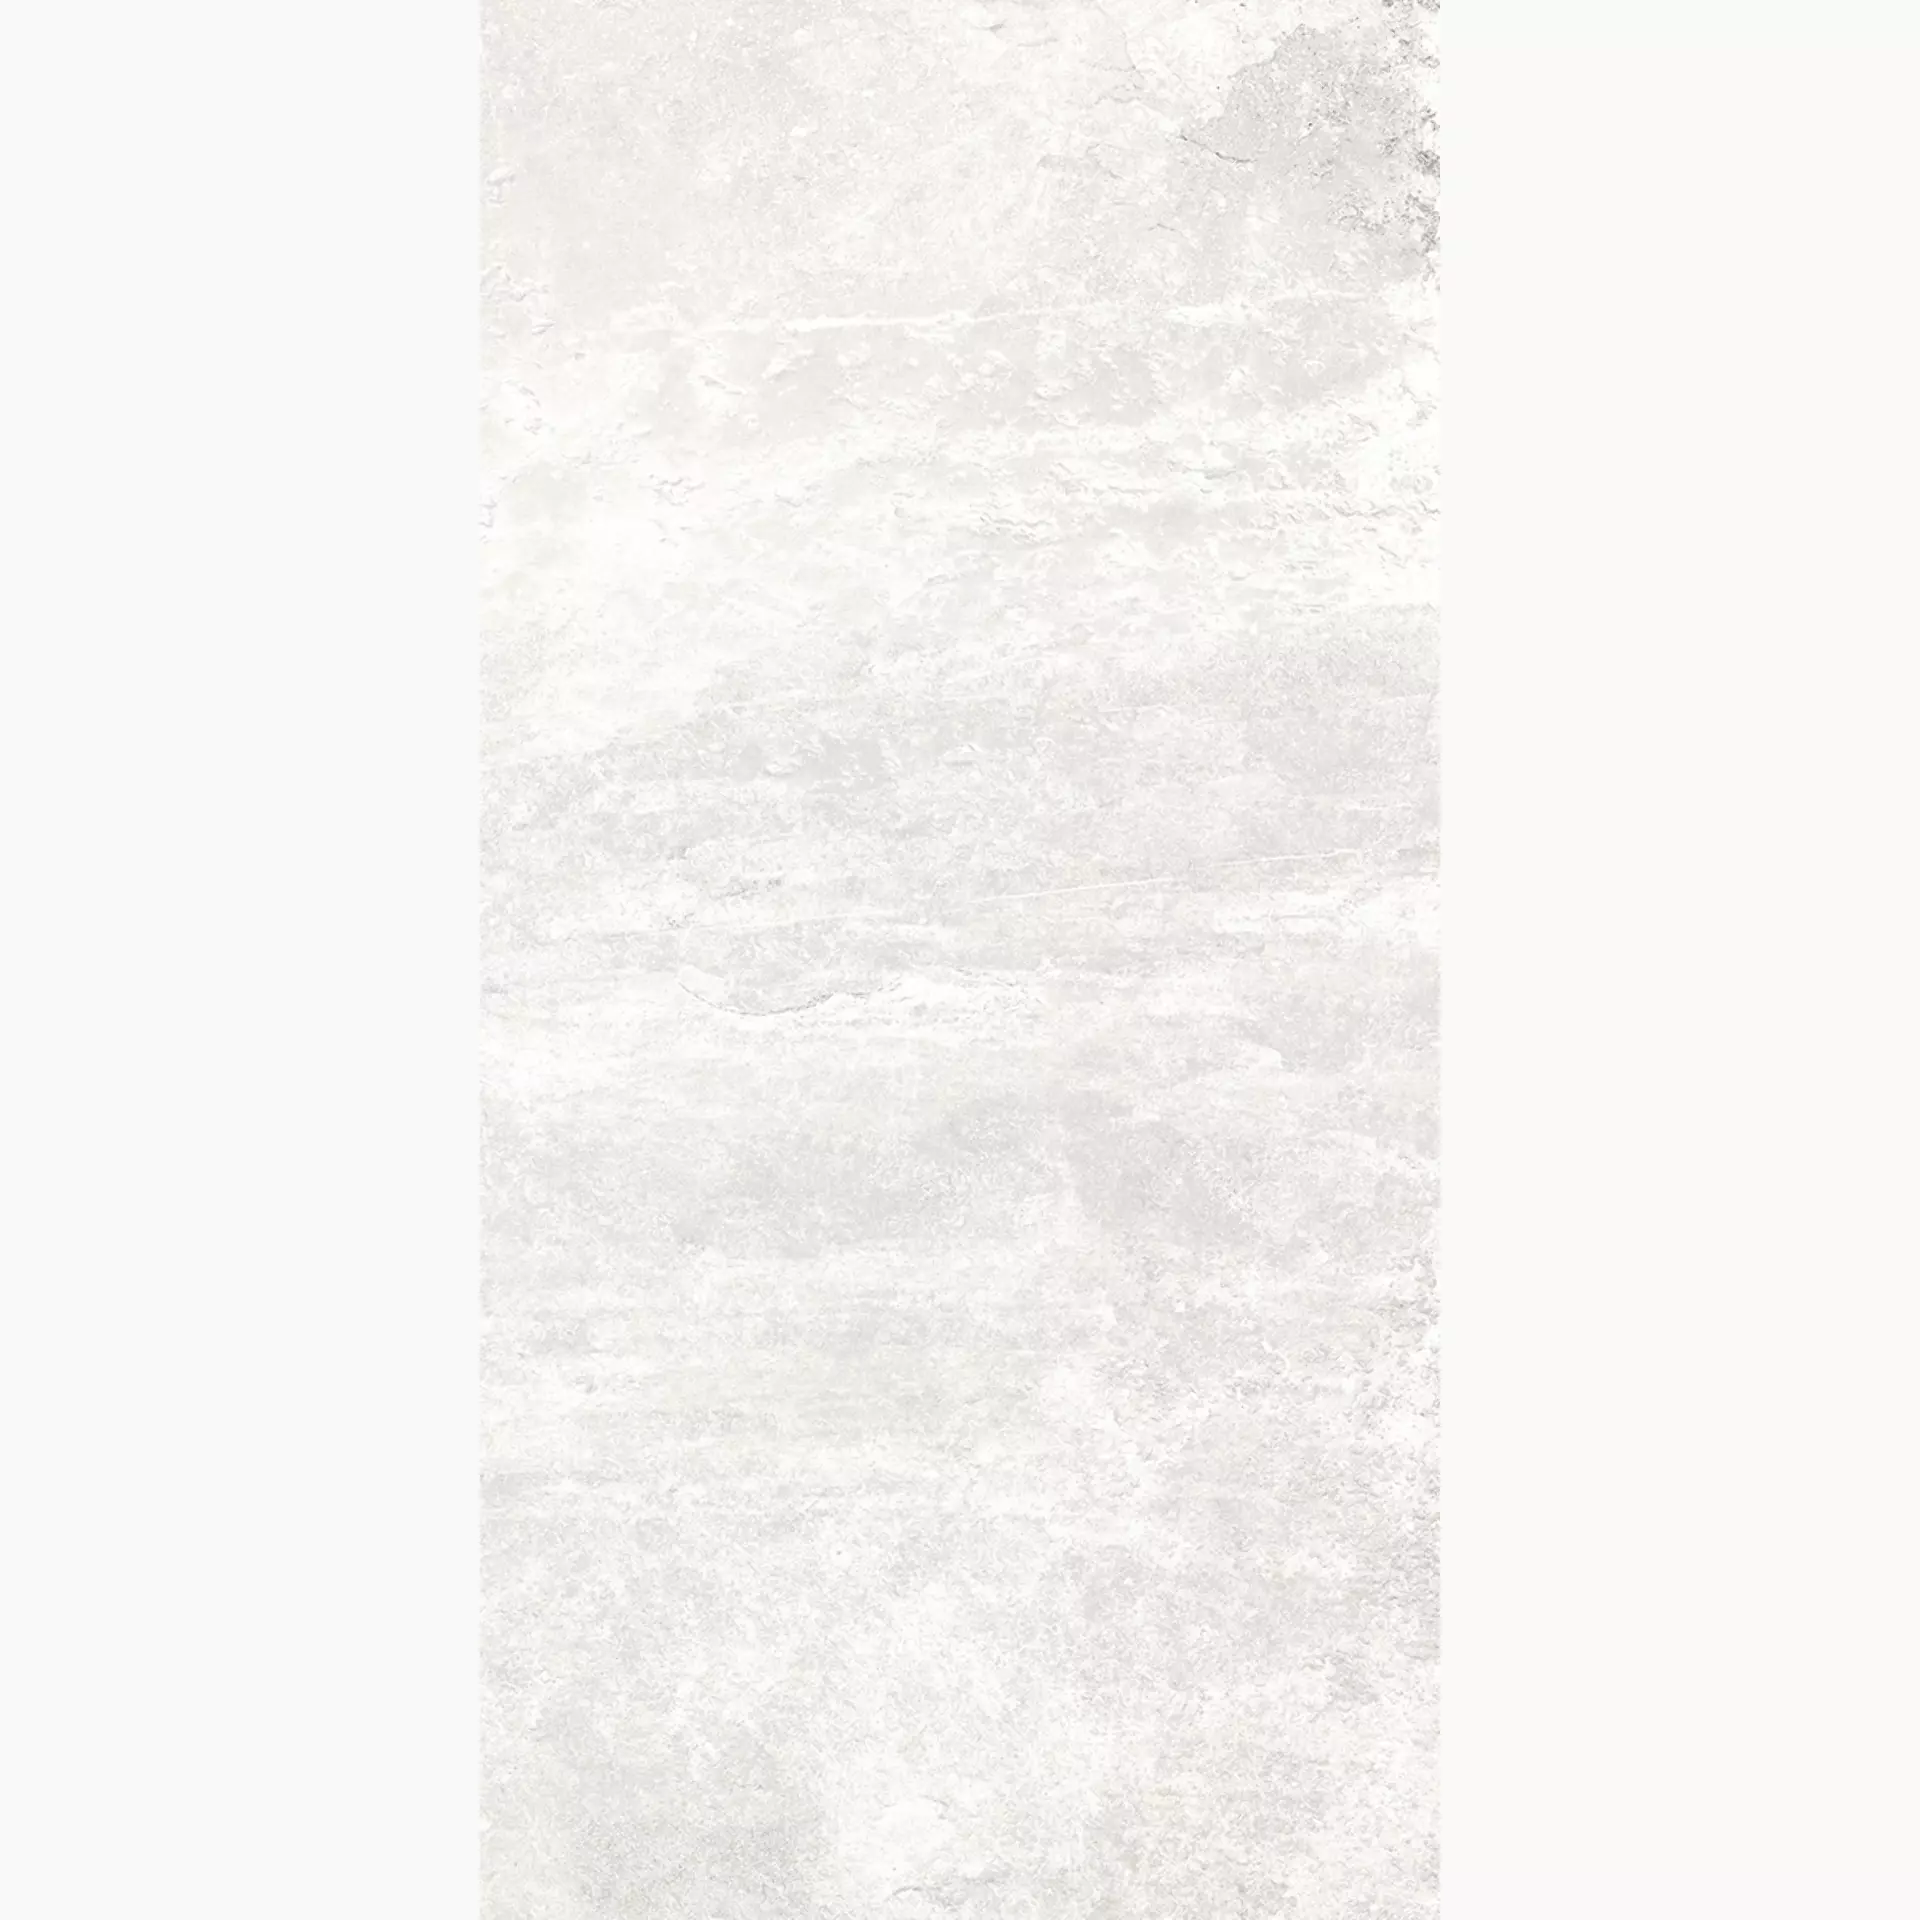 Rondine Ardesie White Naturale J86999 30,5x60,5cm 9,5mm